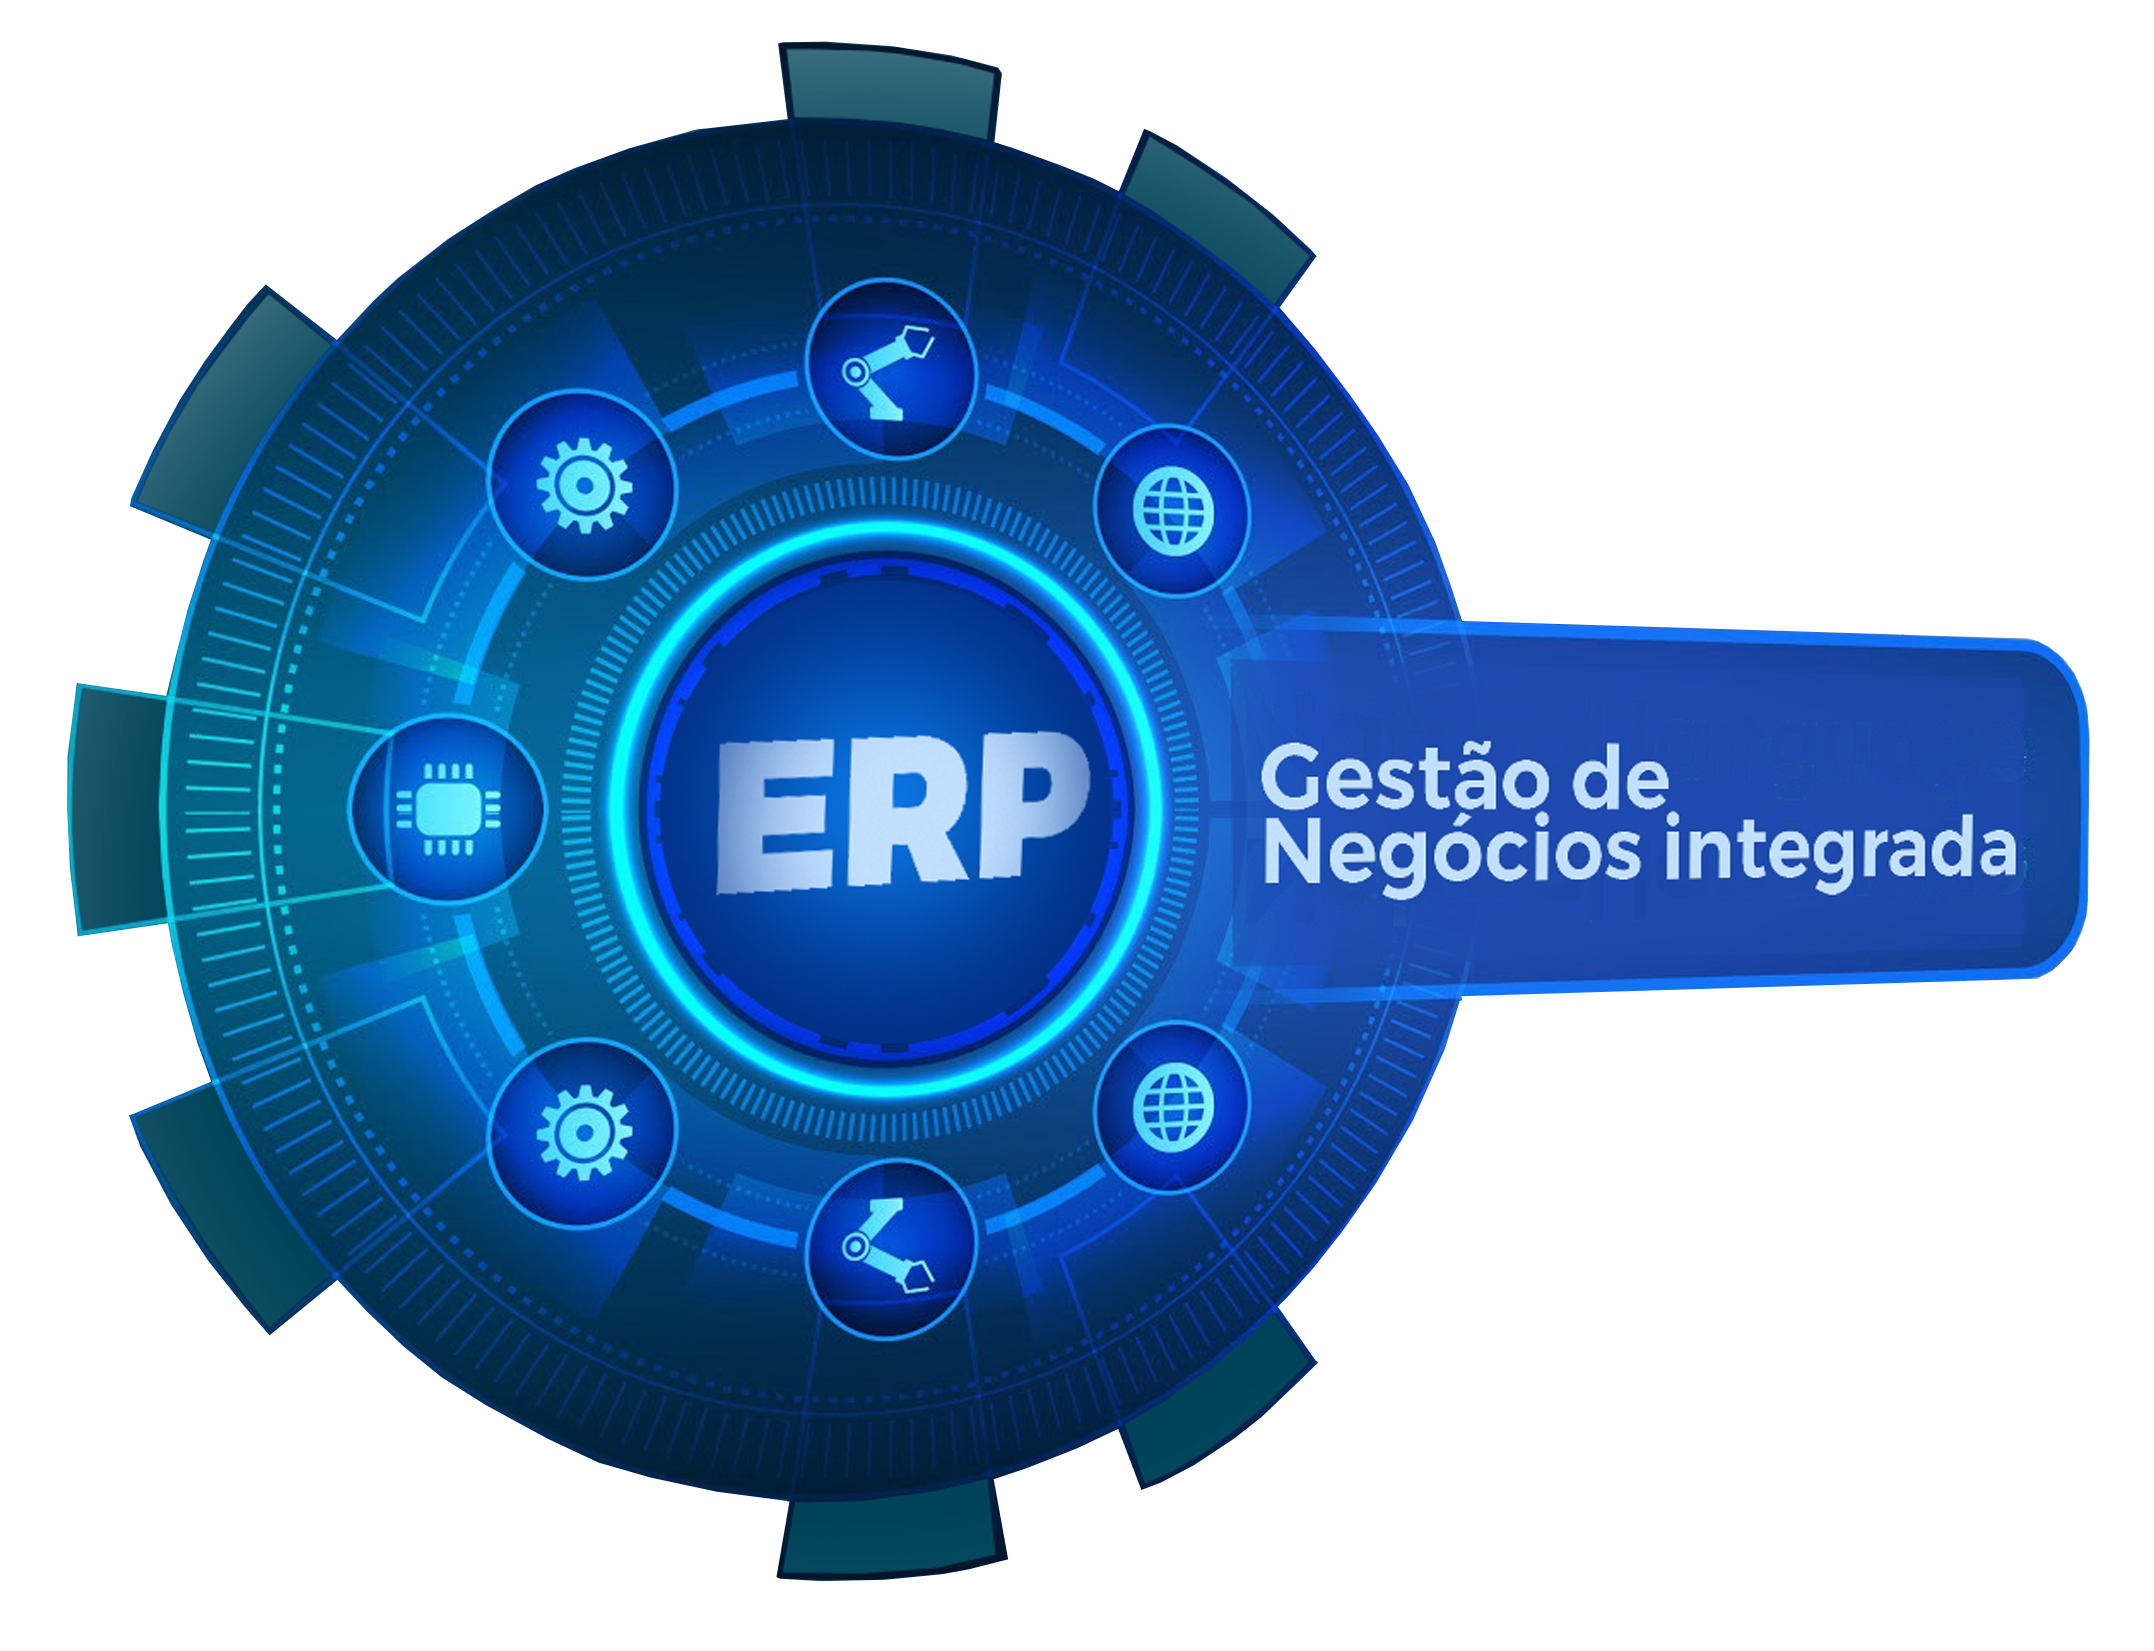 ERP - Gestão e Negócios Integrada